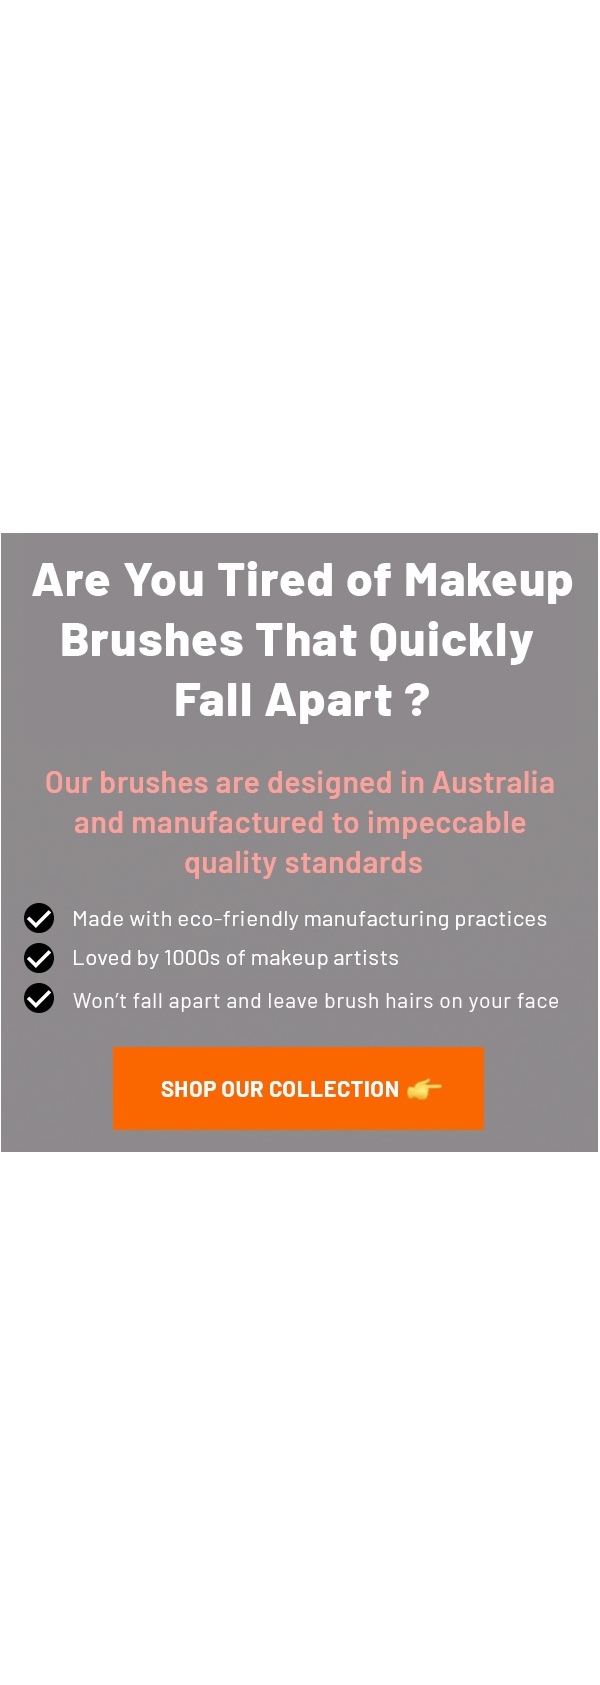 Brushes & Pro Mua Makeup - Makeup